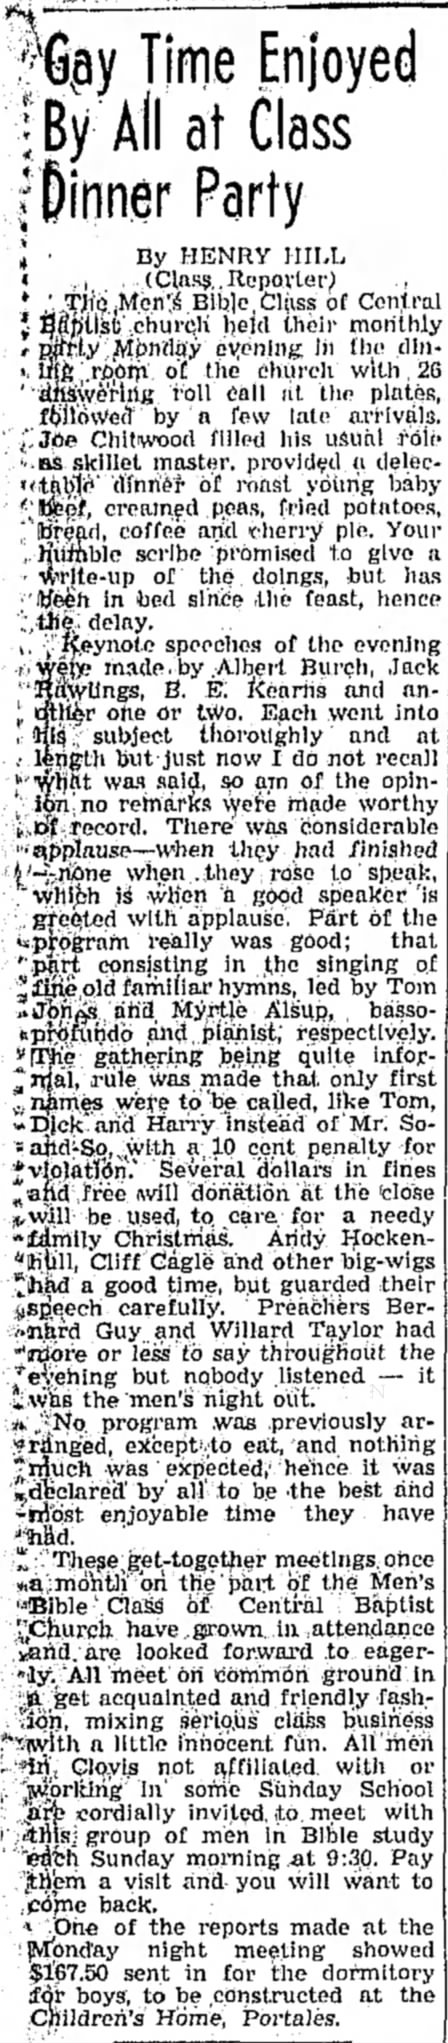 Clovis News-Journal 12/18/1938